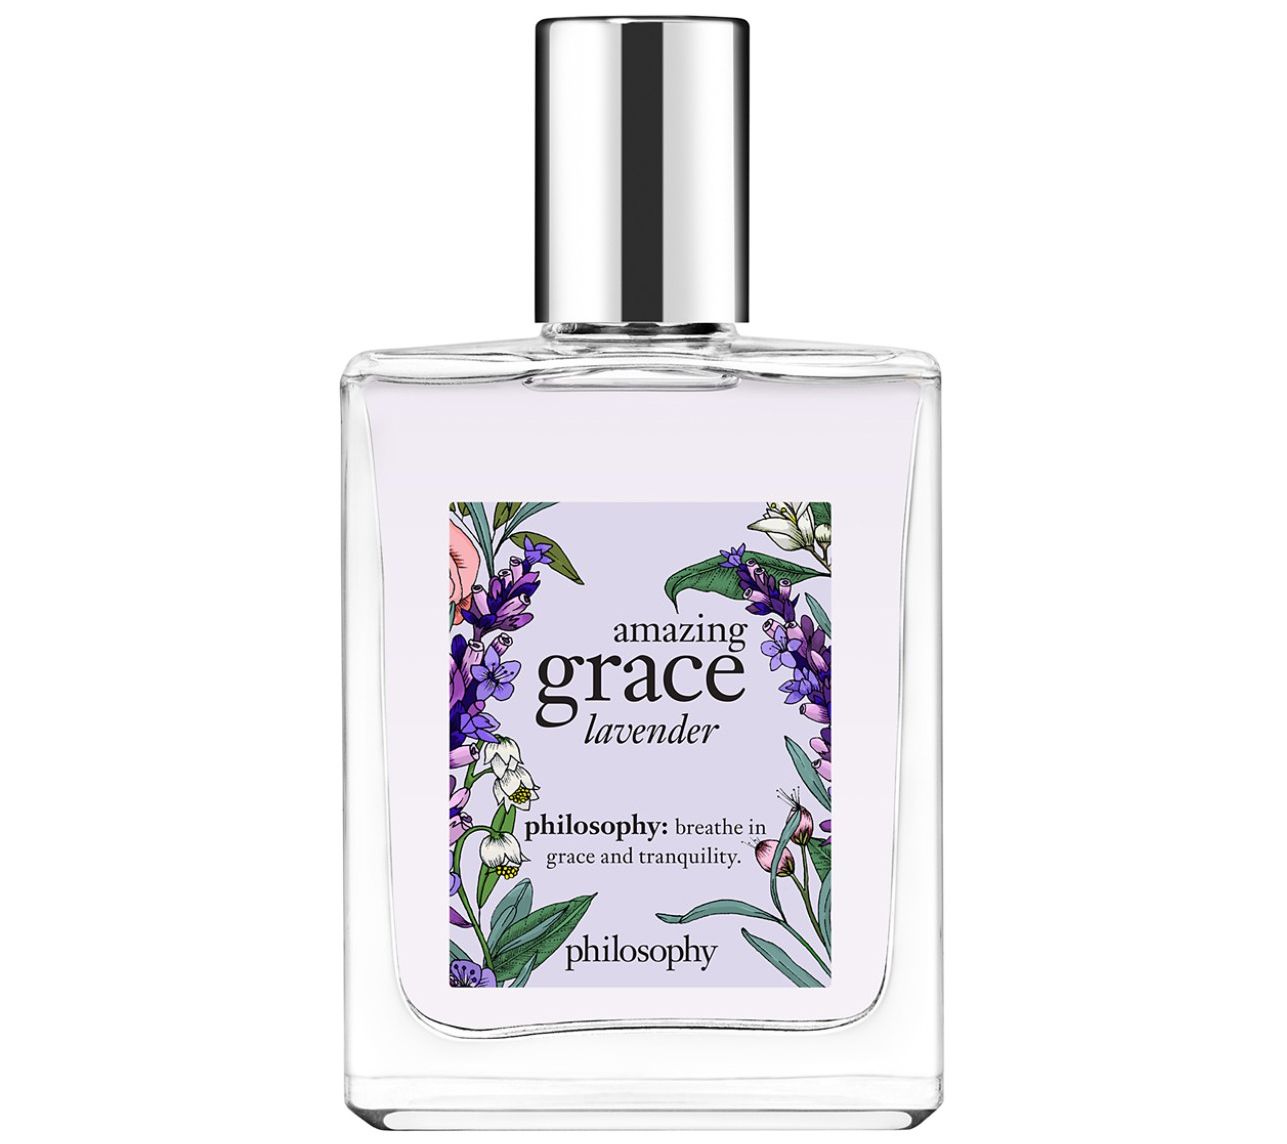 Philosophy Amazing Grace Lavender Spray Fragrance Oz Edt Qvc Com